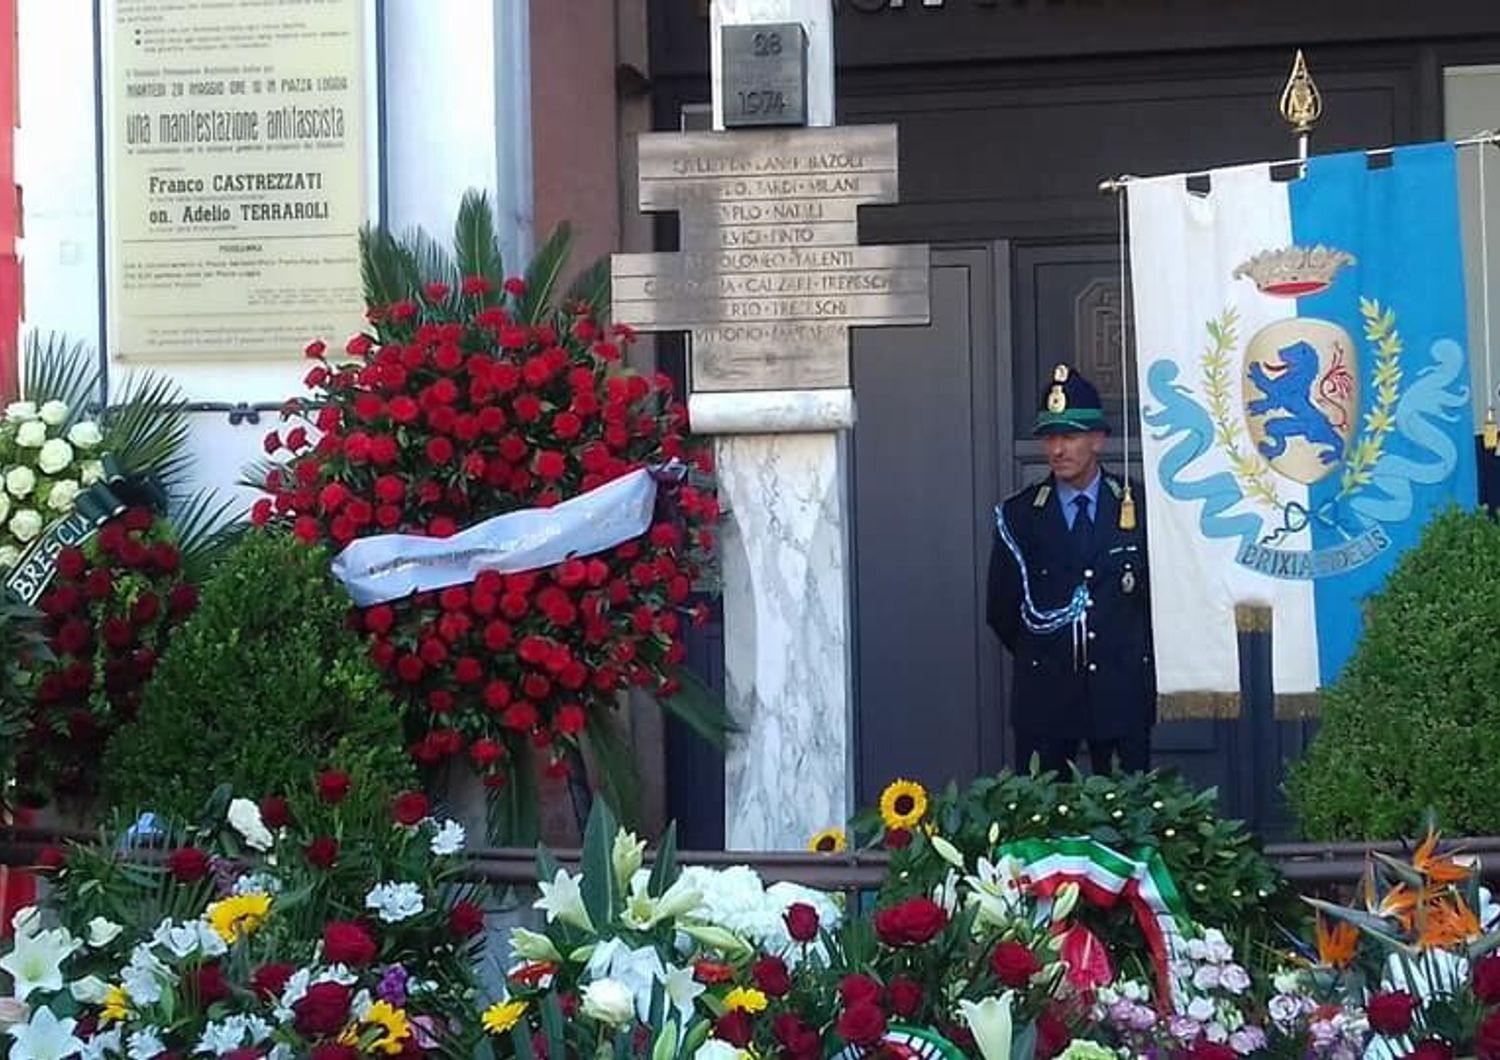 Brescia, commemorazione della strage di  Piazza della Loggia nel 1974 (Facebook)